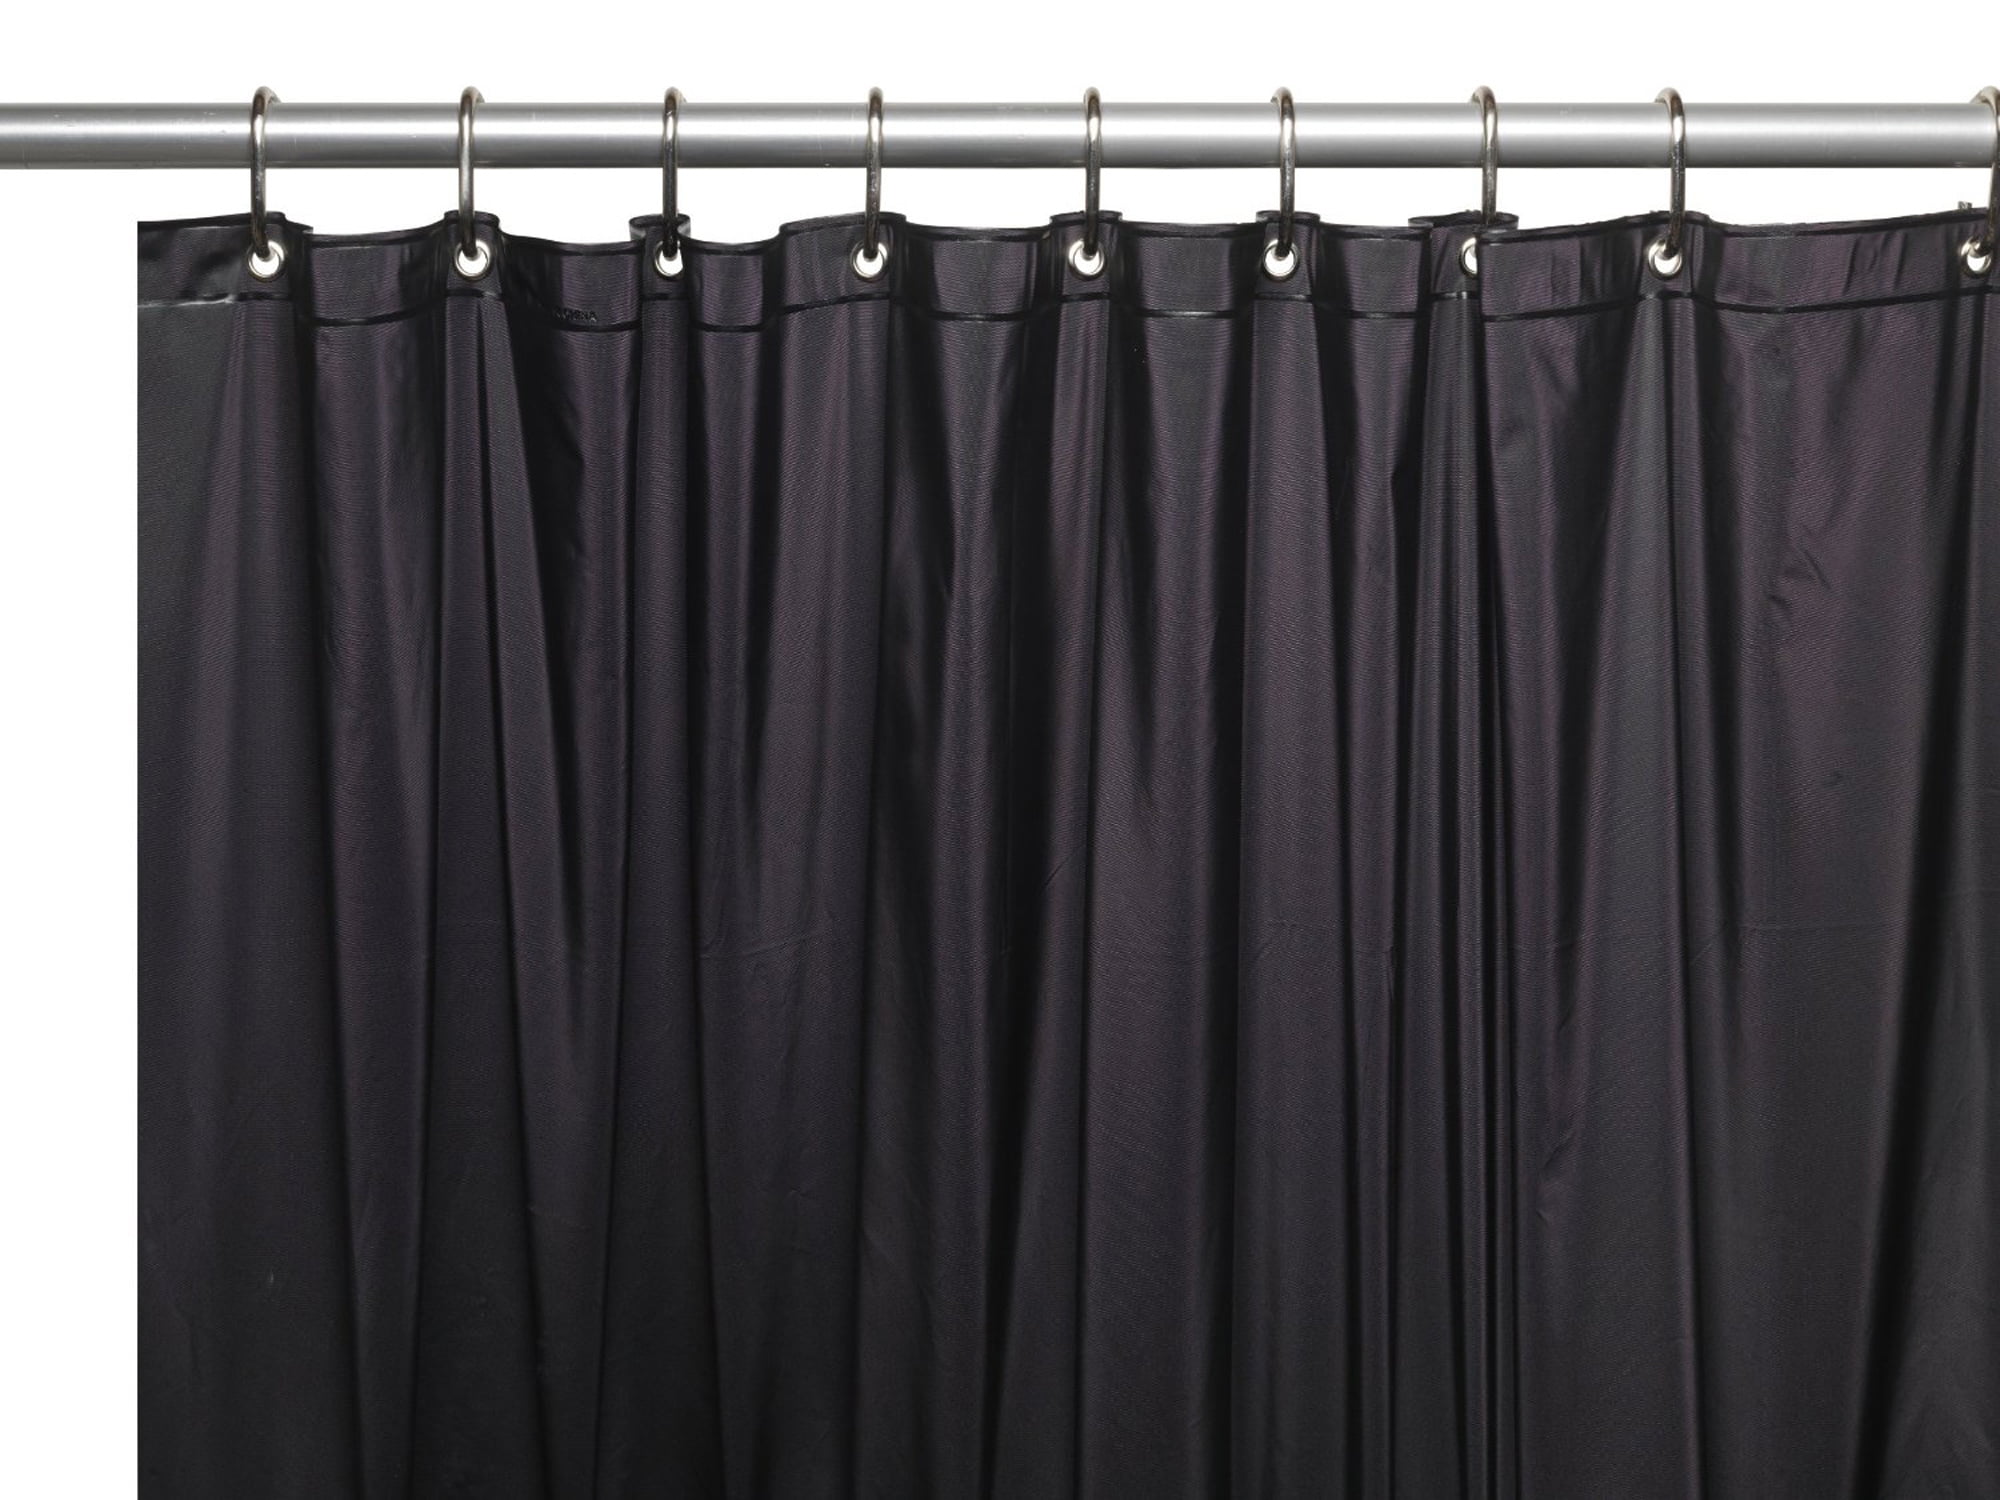 Shower Curtain Liner: Metal Grommets, Magnets, Standard Size 70